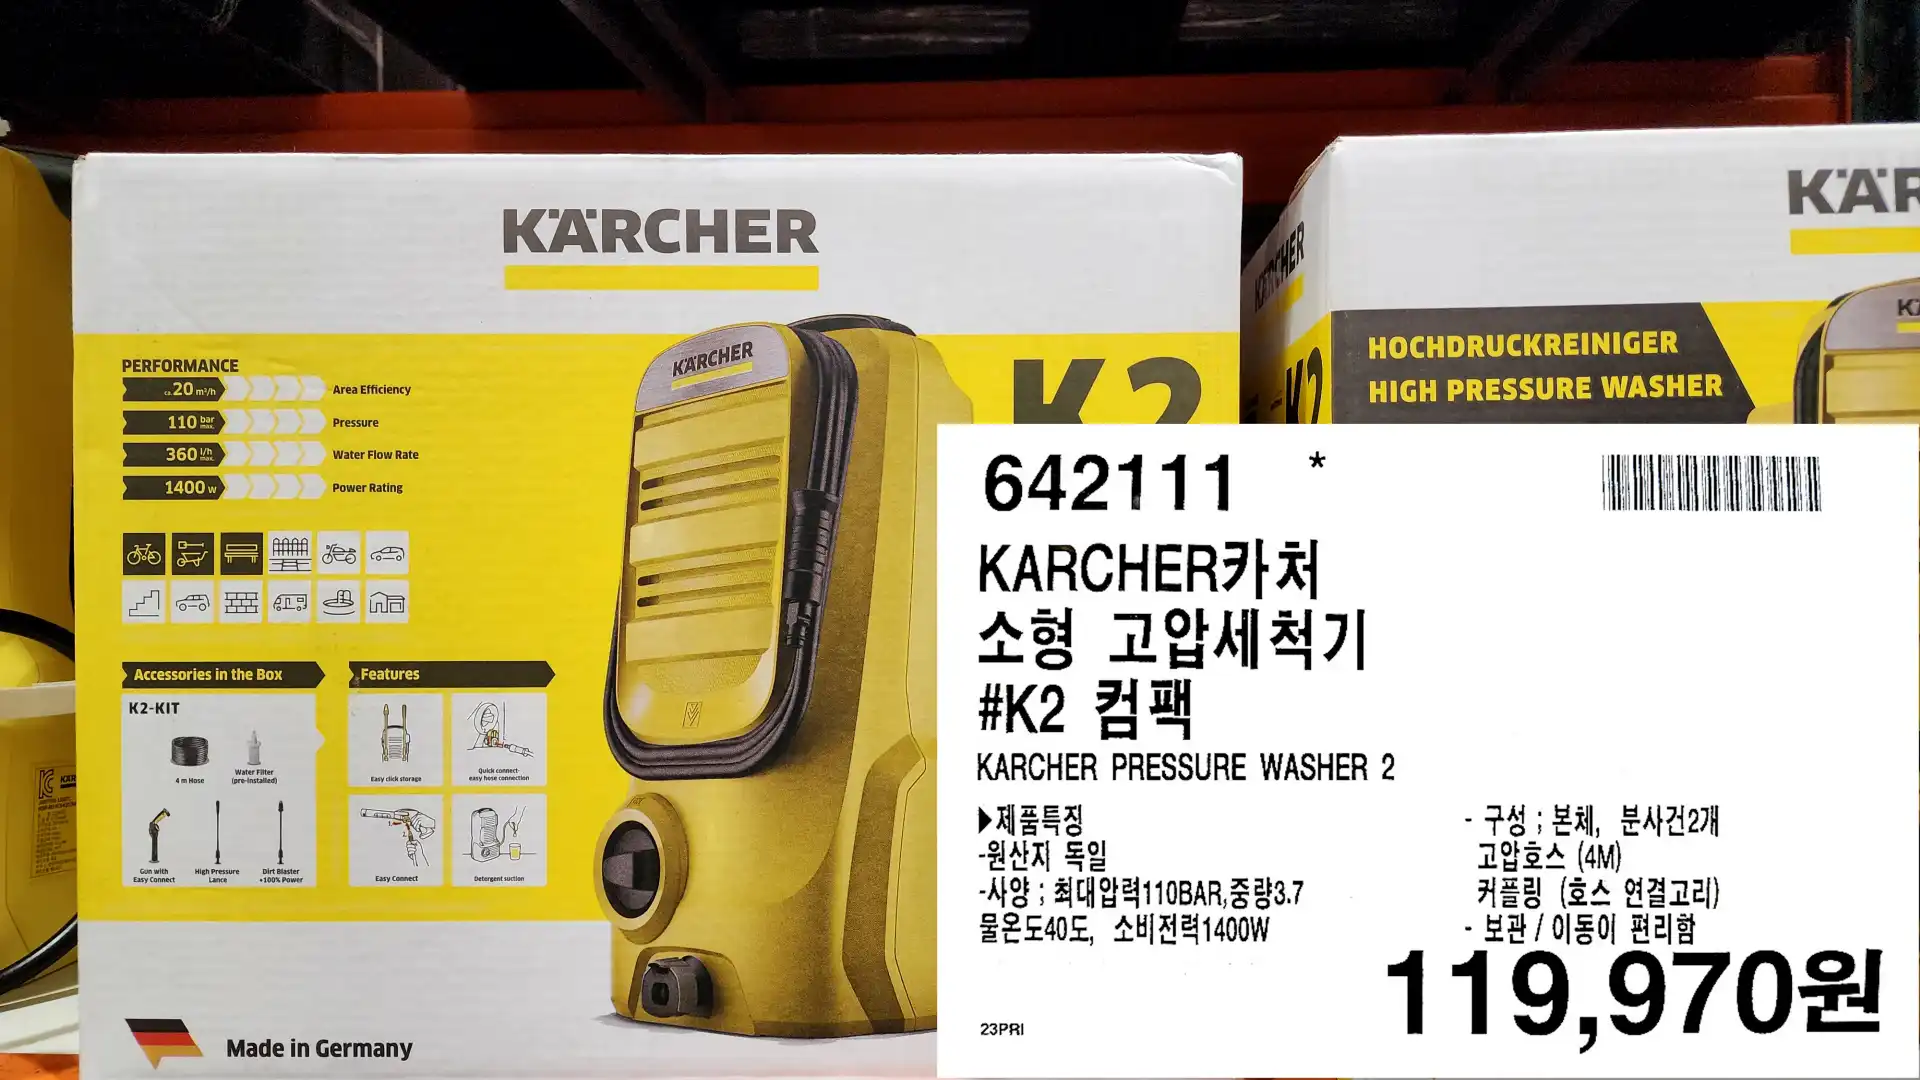 KARCHER카처
소형 고압세척기
#K2 컴팩
KARCHER PRESSURE WASHER 2
▶ 제품특징
-원산지 독일
-사양 ; 최대압력110BAR,중량3.7
물온도40도, 소비전력1400W
- 구성 : 본체, 분사건2개
고압호스 (4M)
커플링 (호스 연결고리)
-보관 / 이동이 편리함
119,970